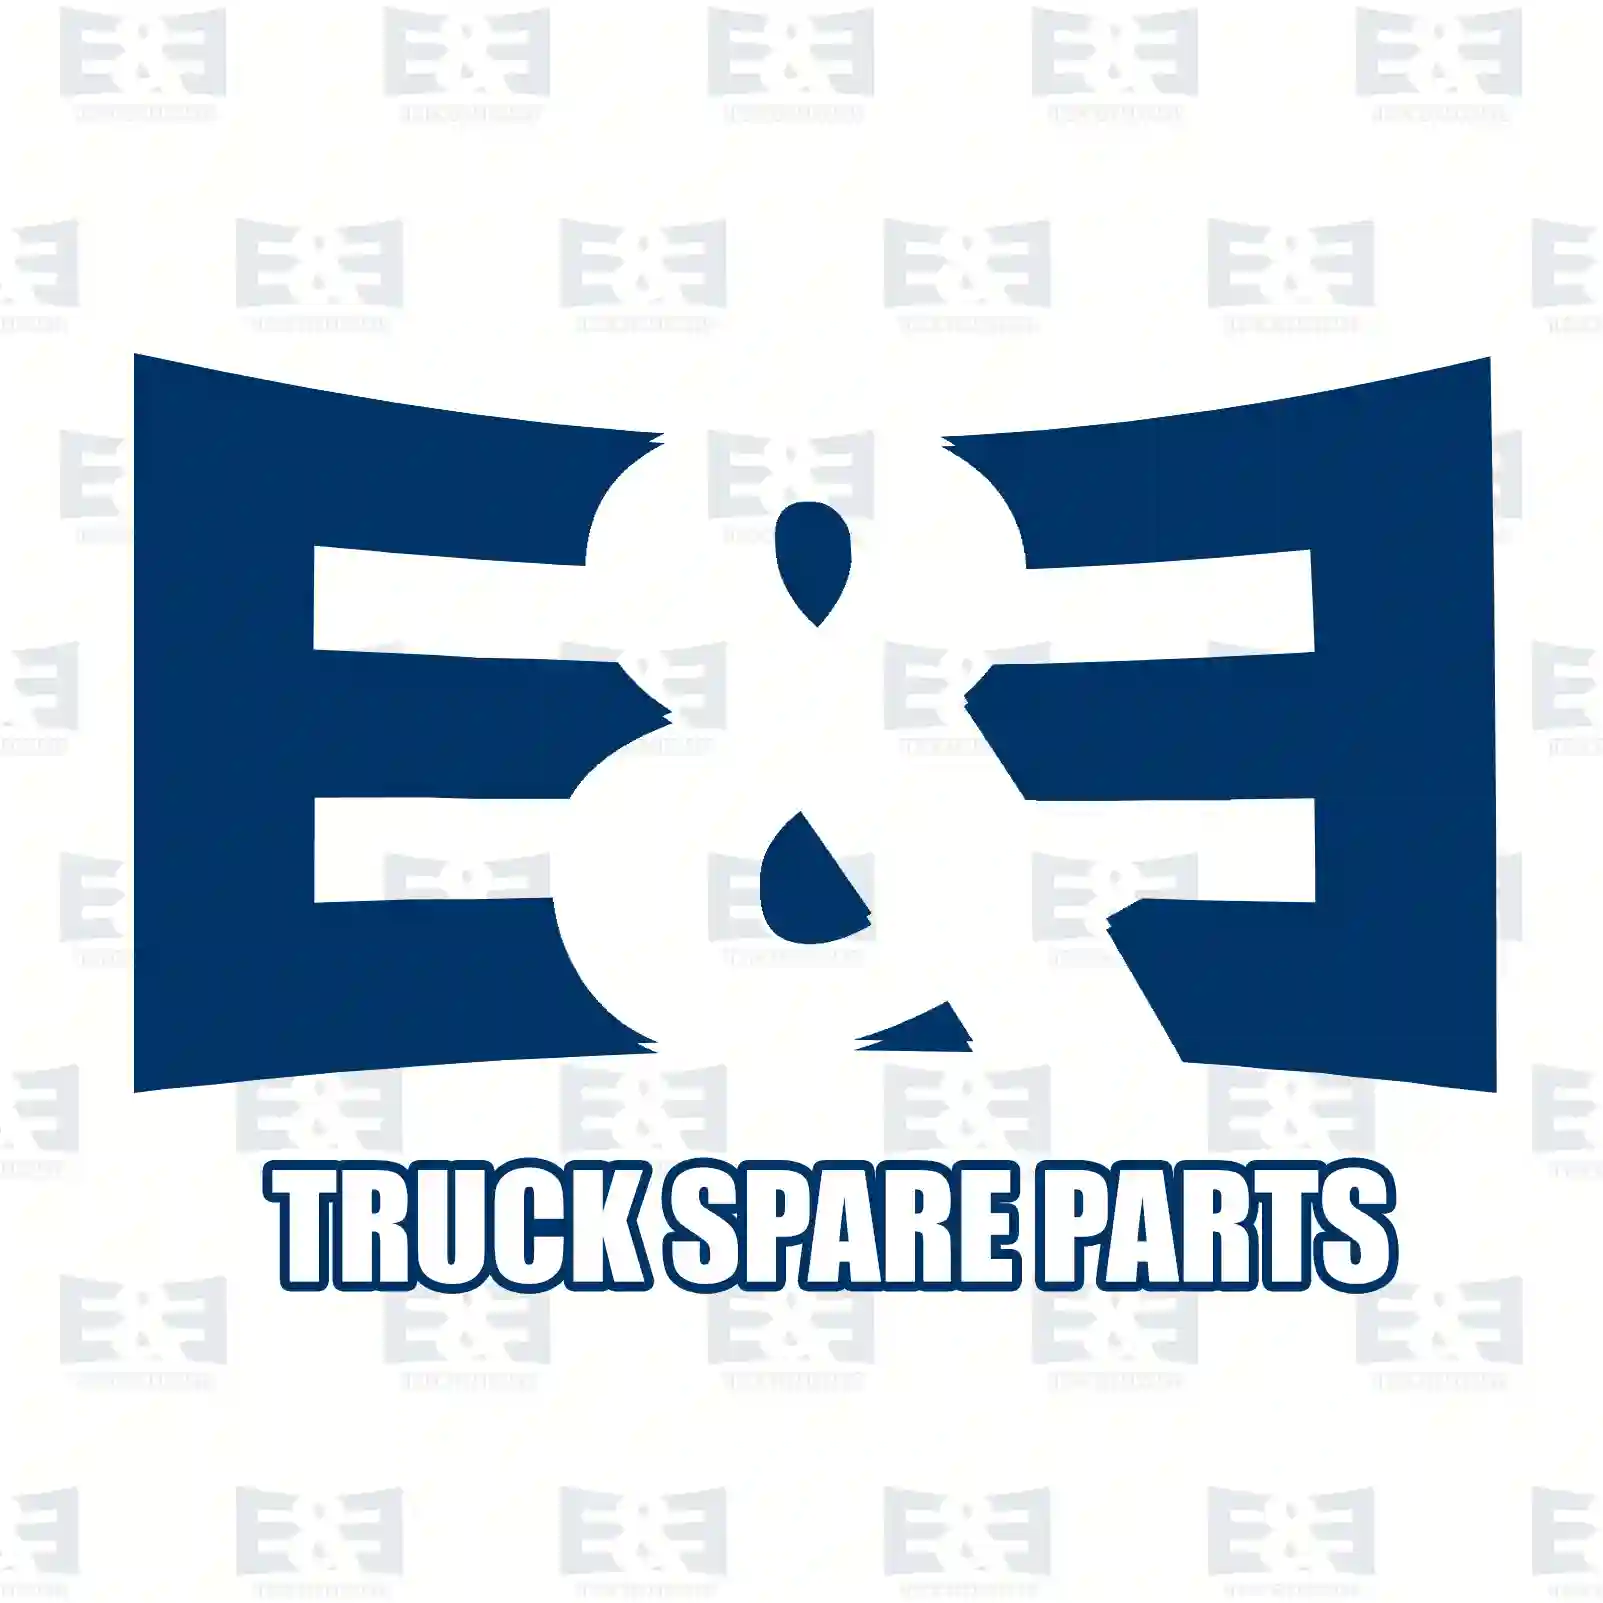 Pump bracket, 2E2296768, 81543010031, 81543010032, 81543010035 ||  2E2296768 E&E Truck Spare Parts | Truck Spare Parts, Auotomotive Spare Parts Pump bracket, 2E2296768, 81543010031, 81543010032, 81543010035 ||  2E2296768 E&E Truck Spare Parts | Truck Spare Parts, Auotomotive Spare Parts